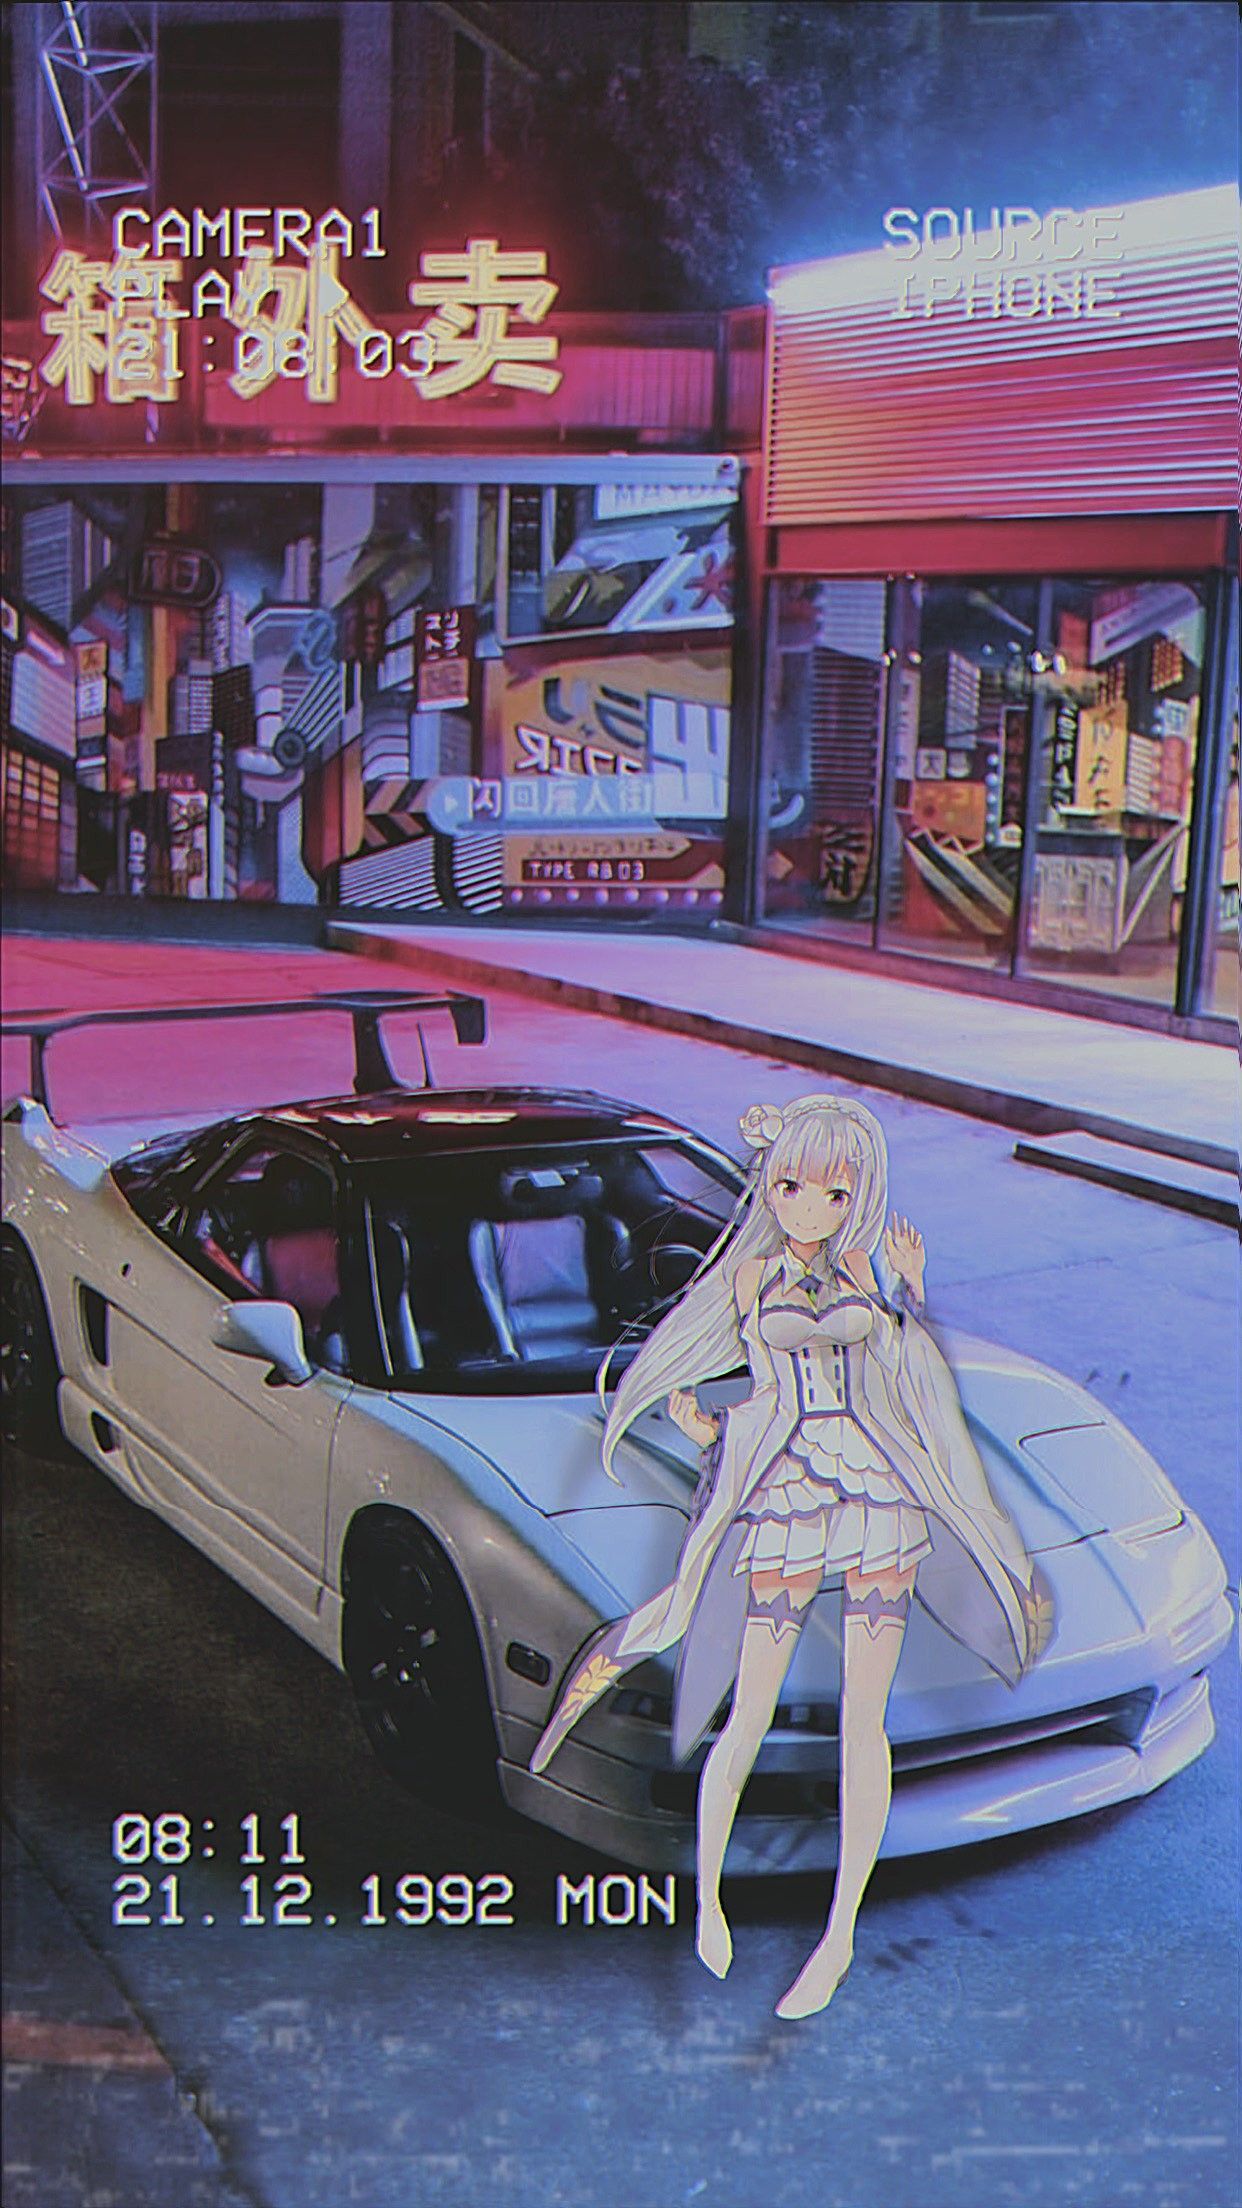 Anime jdm. Best jdm cars, Jdm wallpaper, Jdm girls